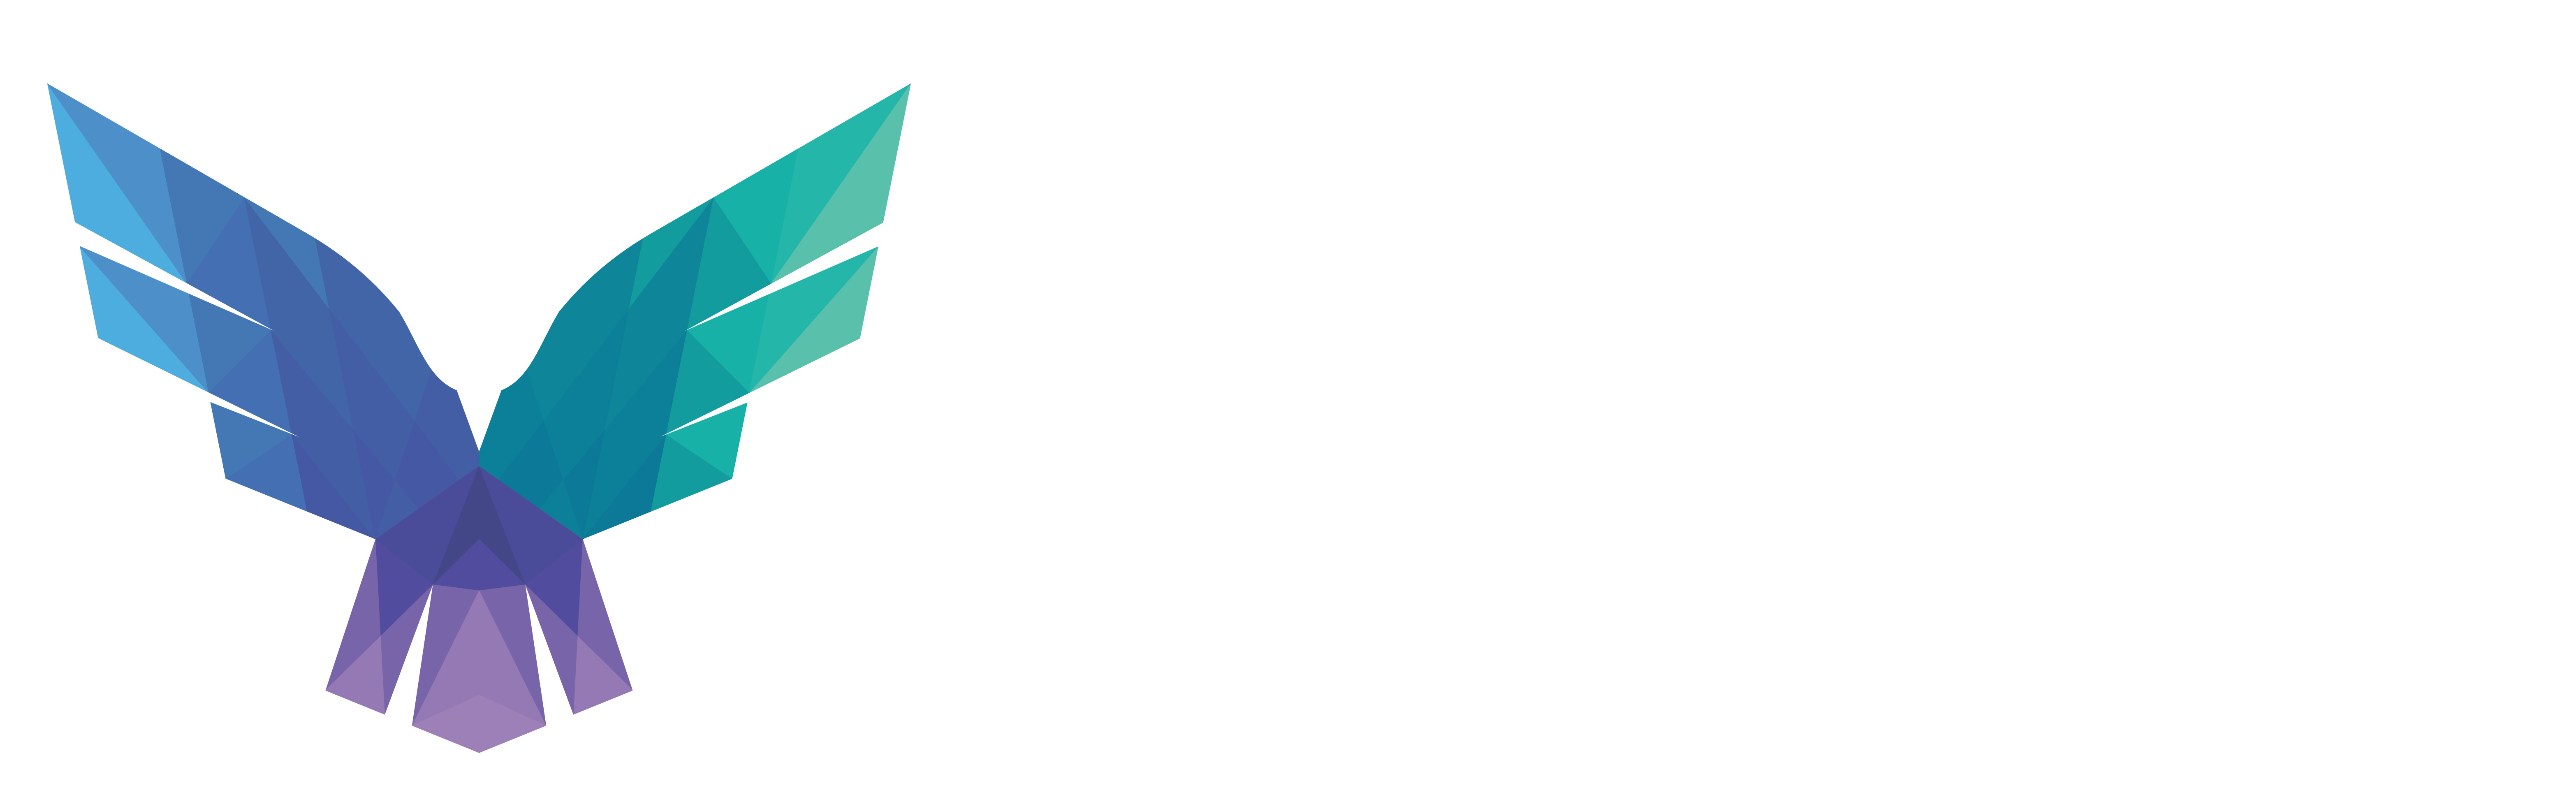 FalconForce